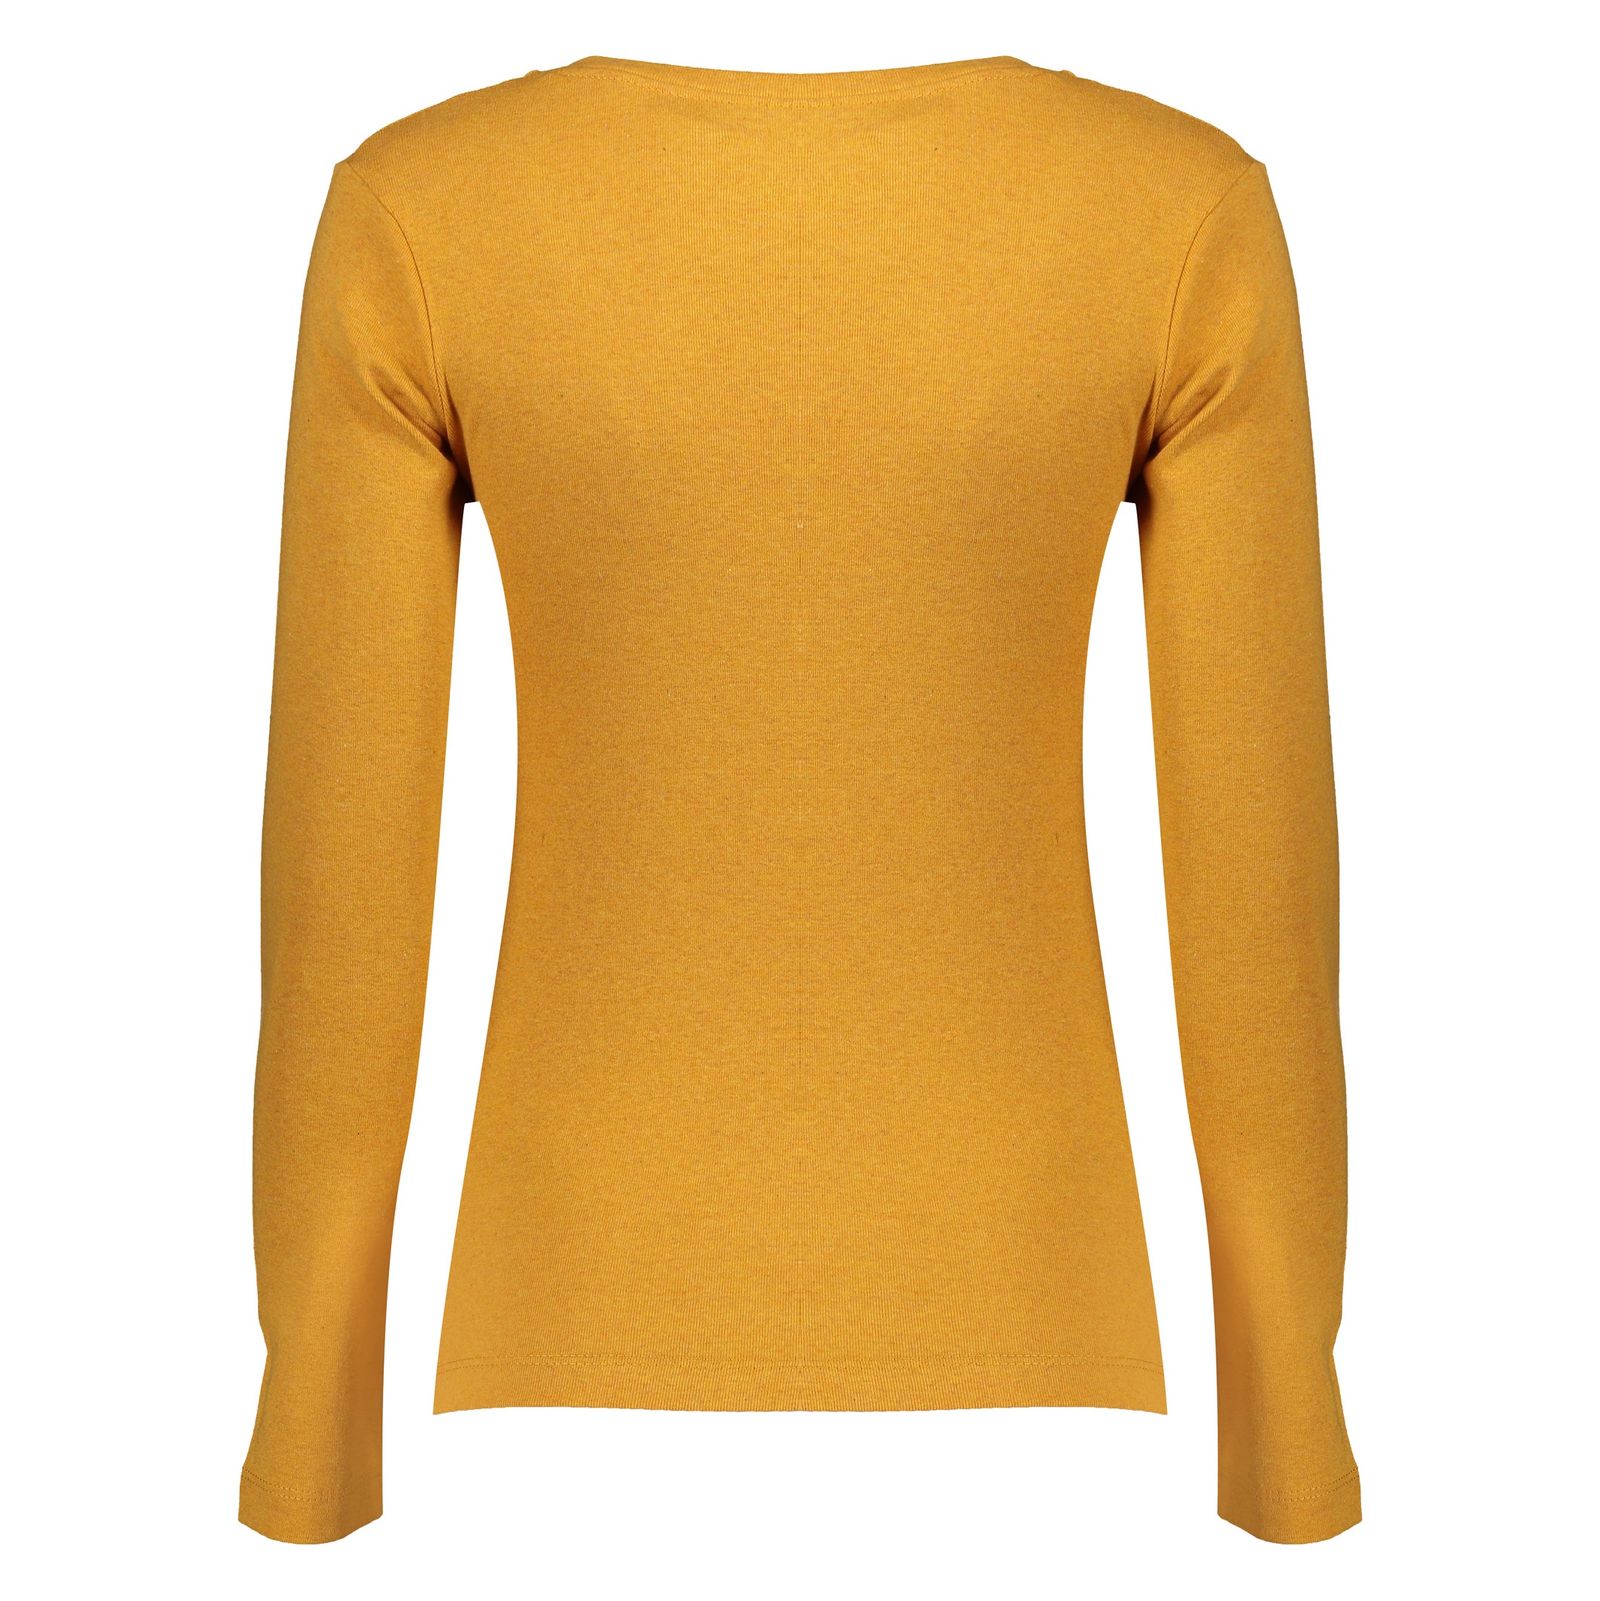 تی شرت زنانه گارودی مدل 1003107001-16 - نارنجی - 4